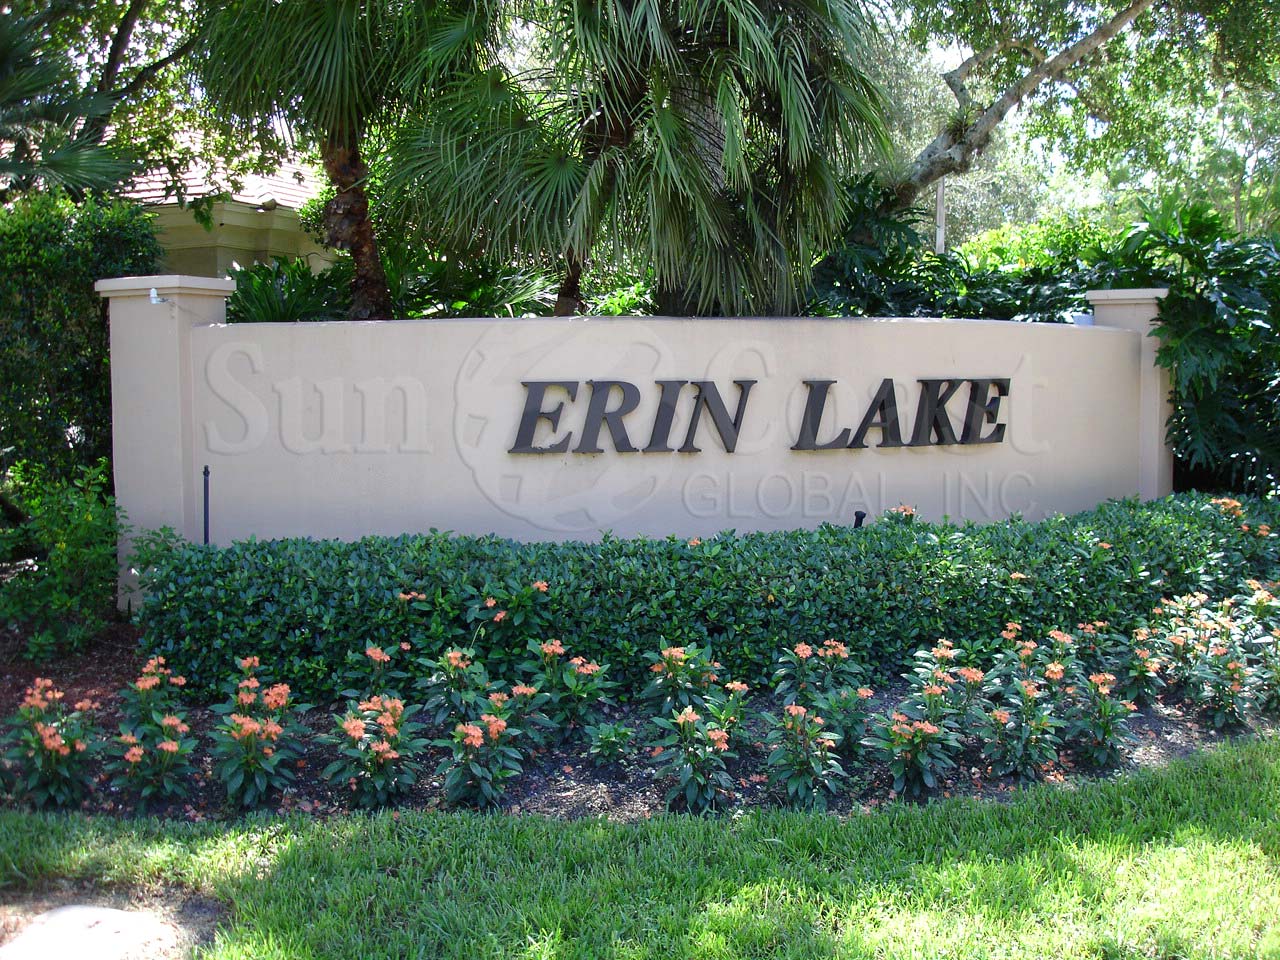 Erin Lake signage